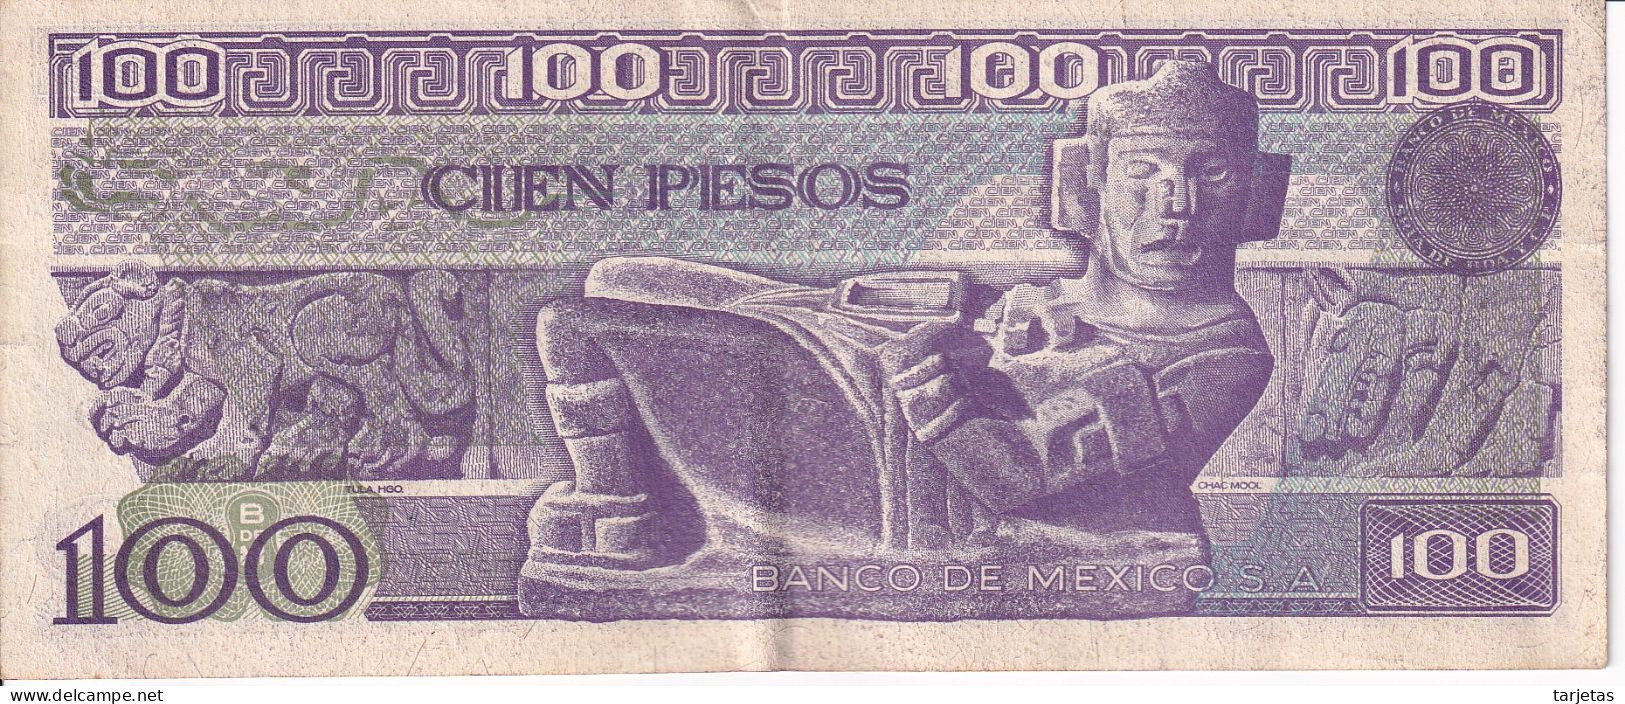 BILLETE DE MEXICO DE 100 PESOS DEL 25 DE MARZO DE 1982   (BANKNOTE) - Mexico